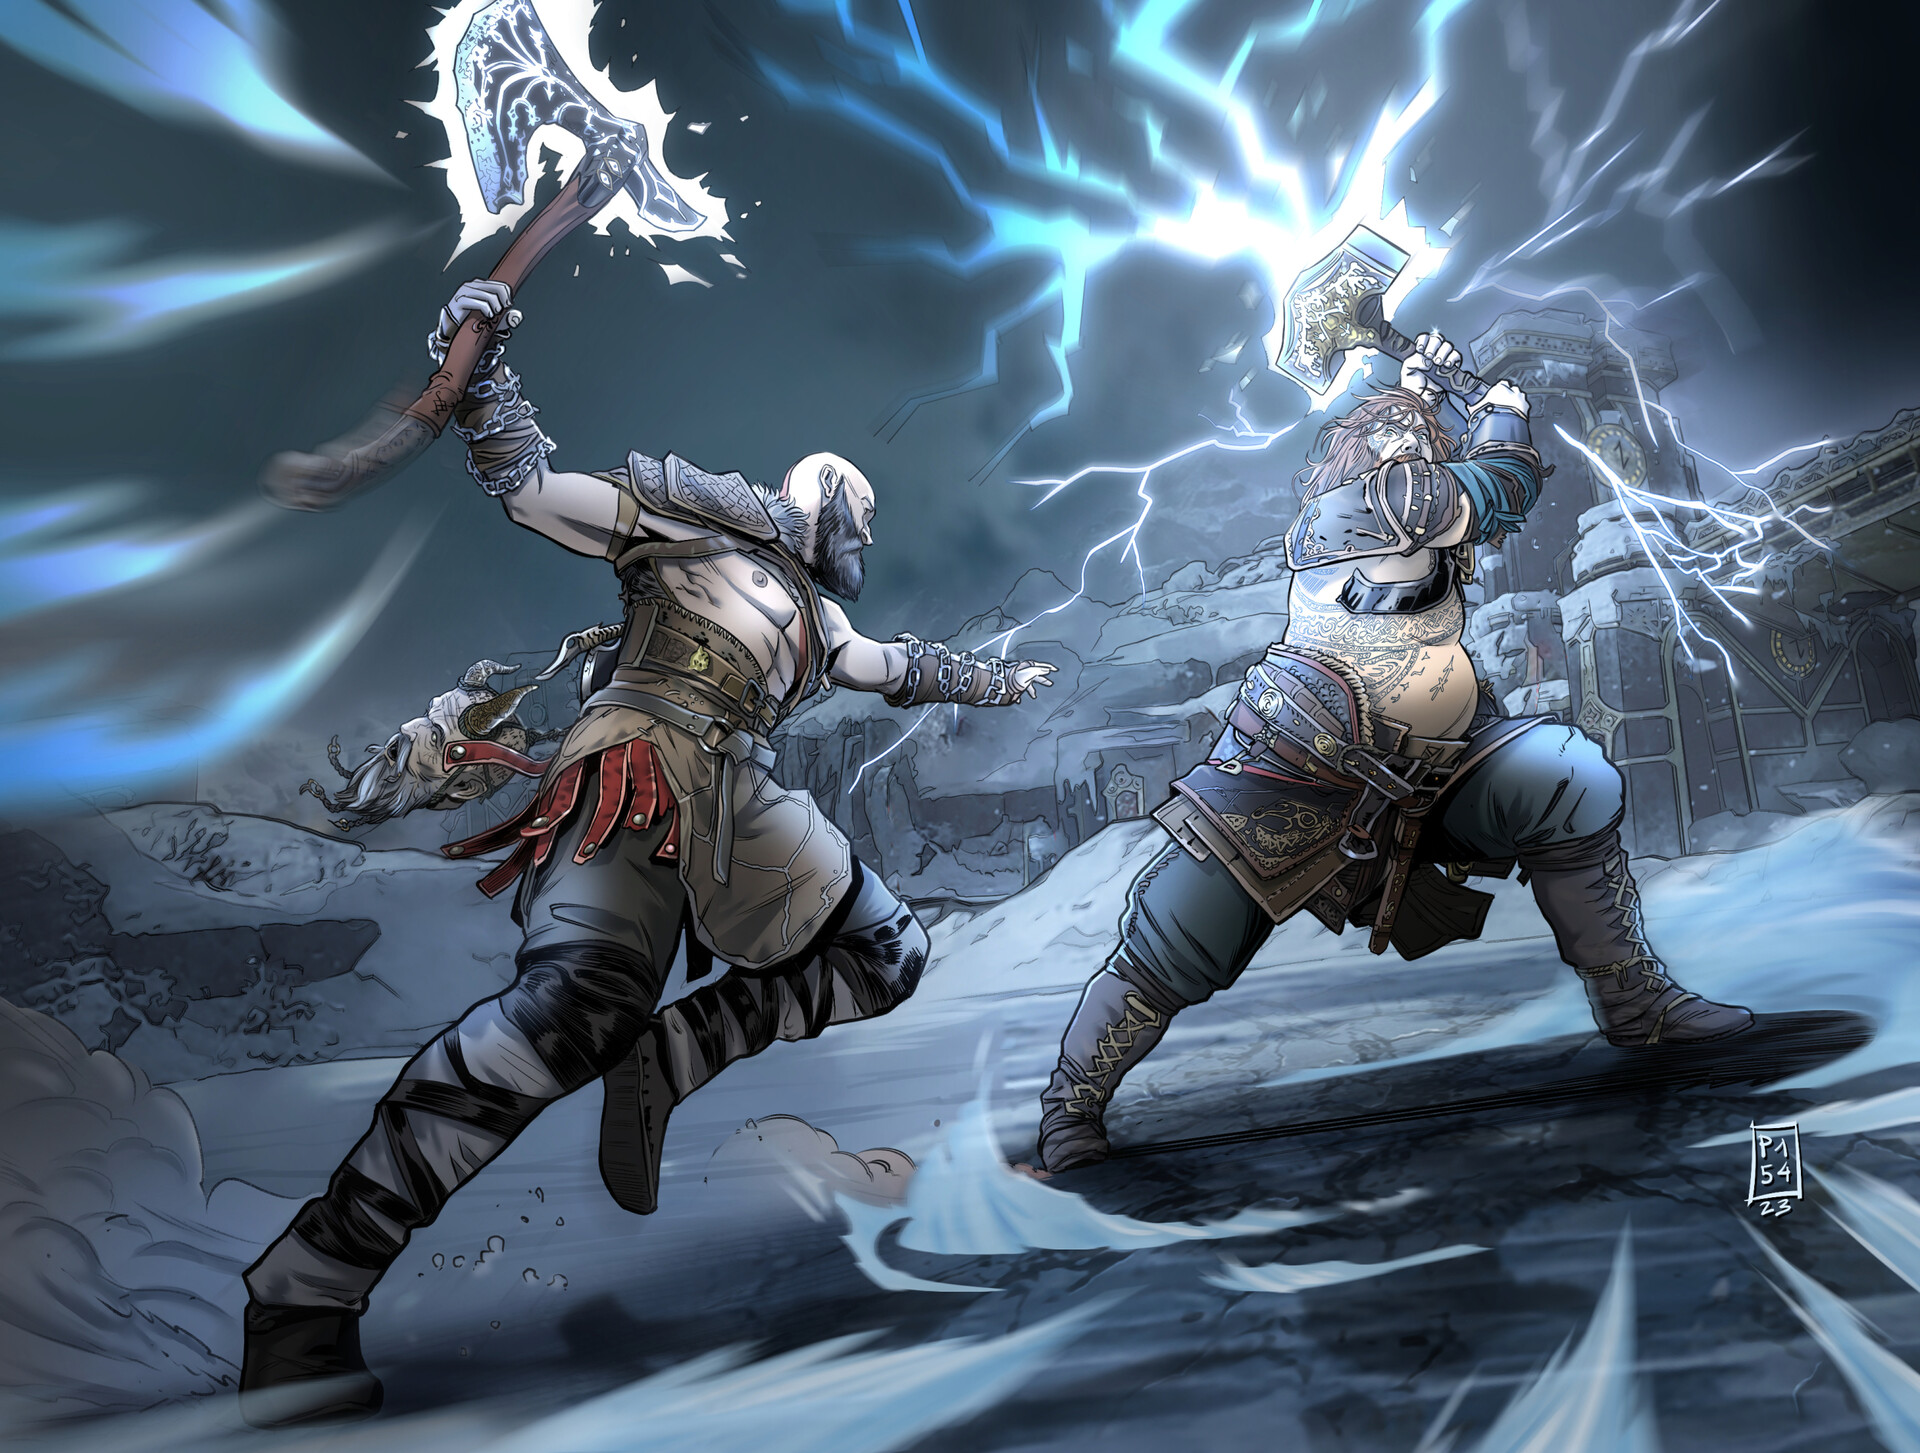 Thor vs Kratos by Francesco Pisa